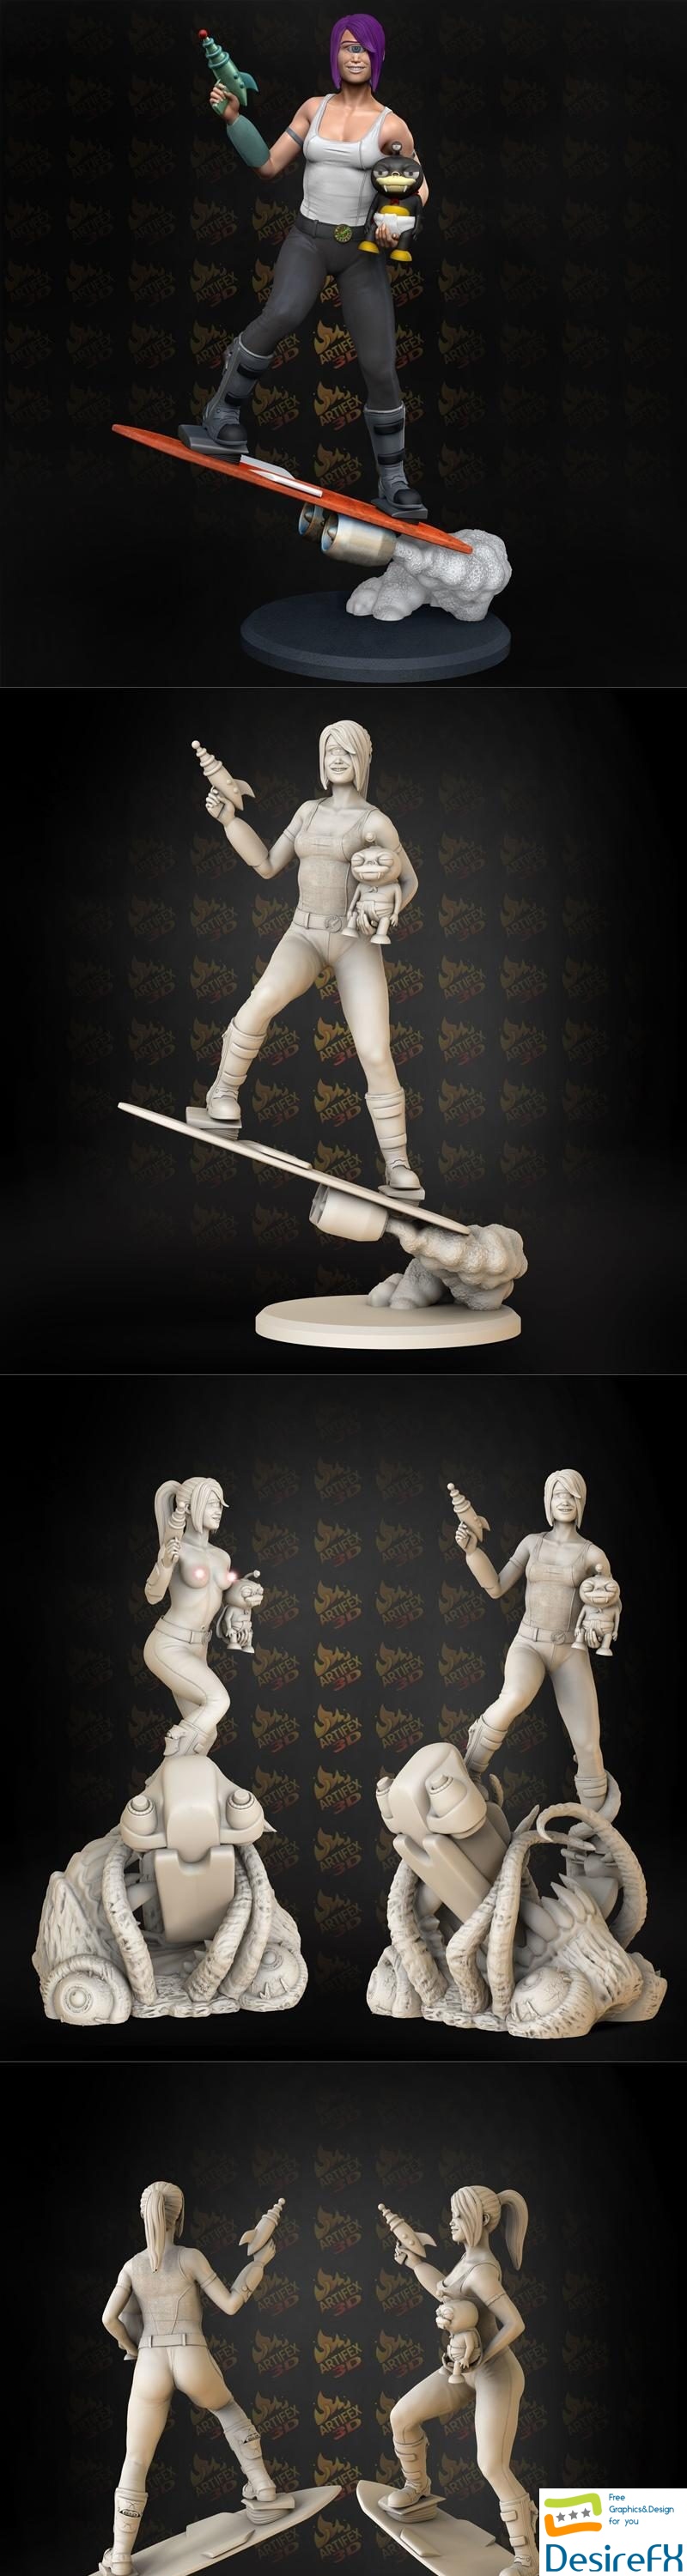 Artifex3d - Leela 3D Print